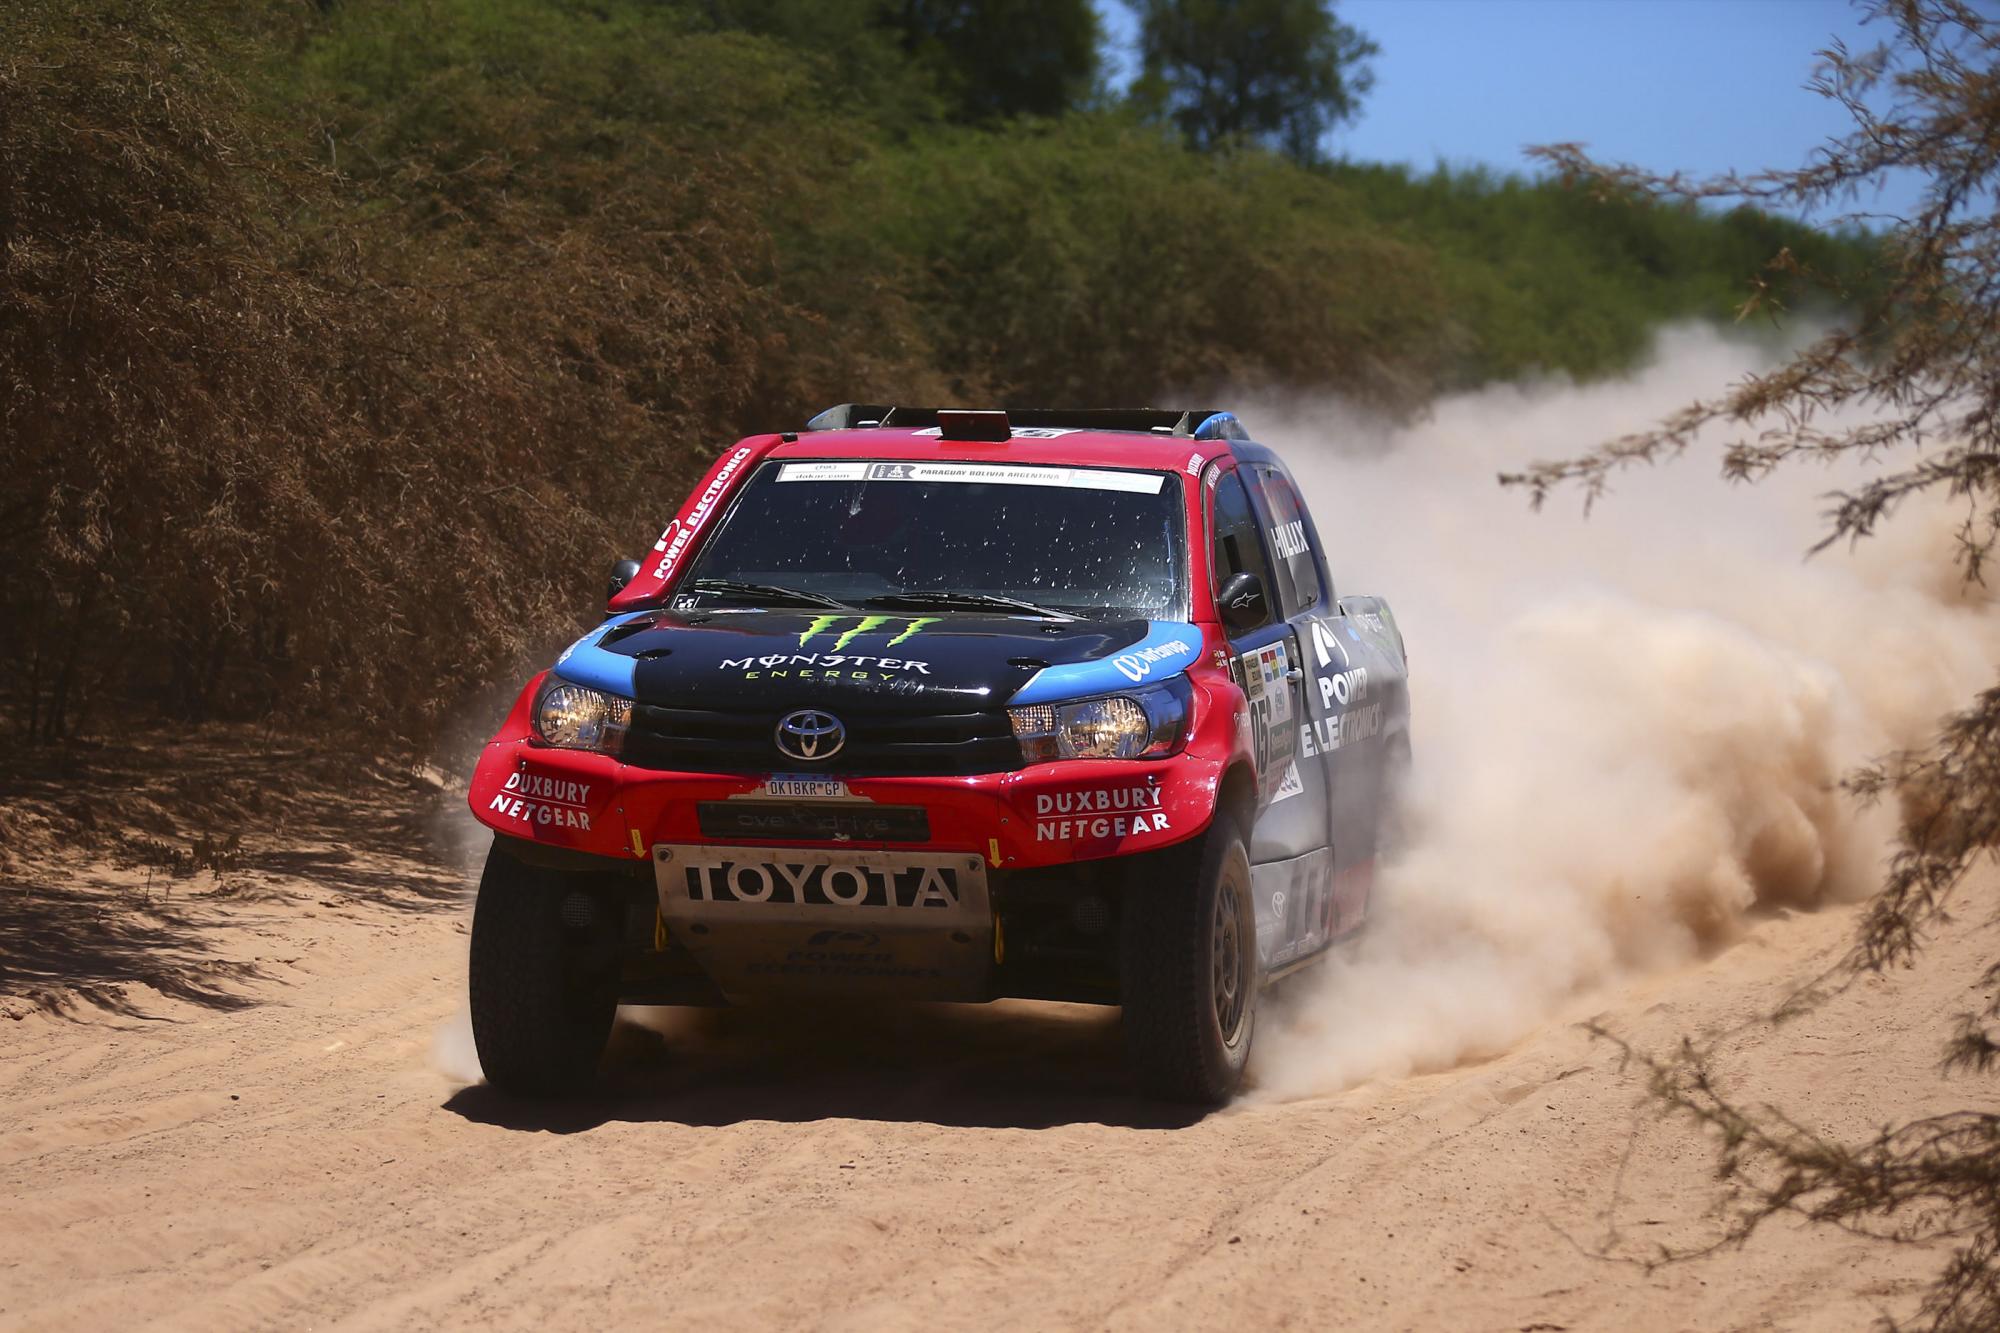  Nani Roma y su copiloto Alex Haro Bravo de Toyota participan en la segunda etapa del Rally Dakar 2017, entre Resistencia y Tucumán (Argentina).